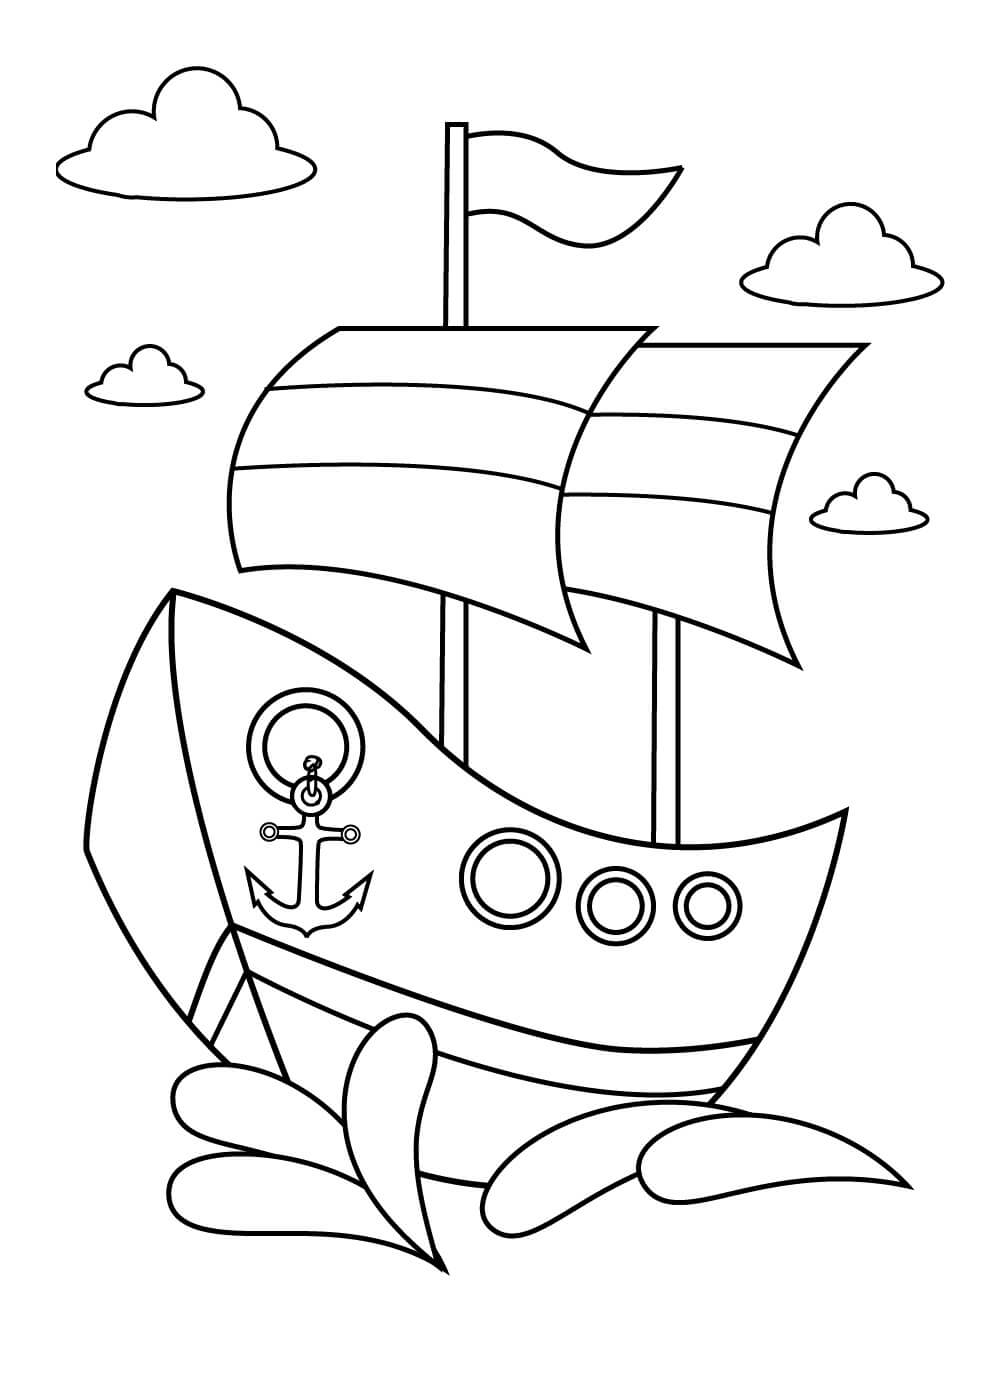 Navio Pirata com Nuvens para colorir